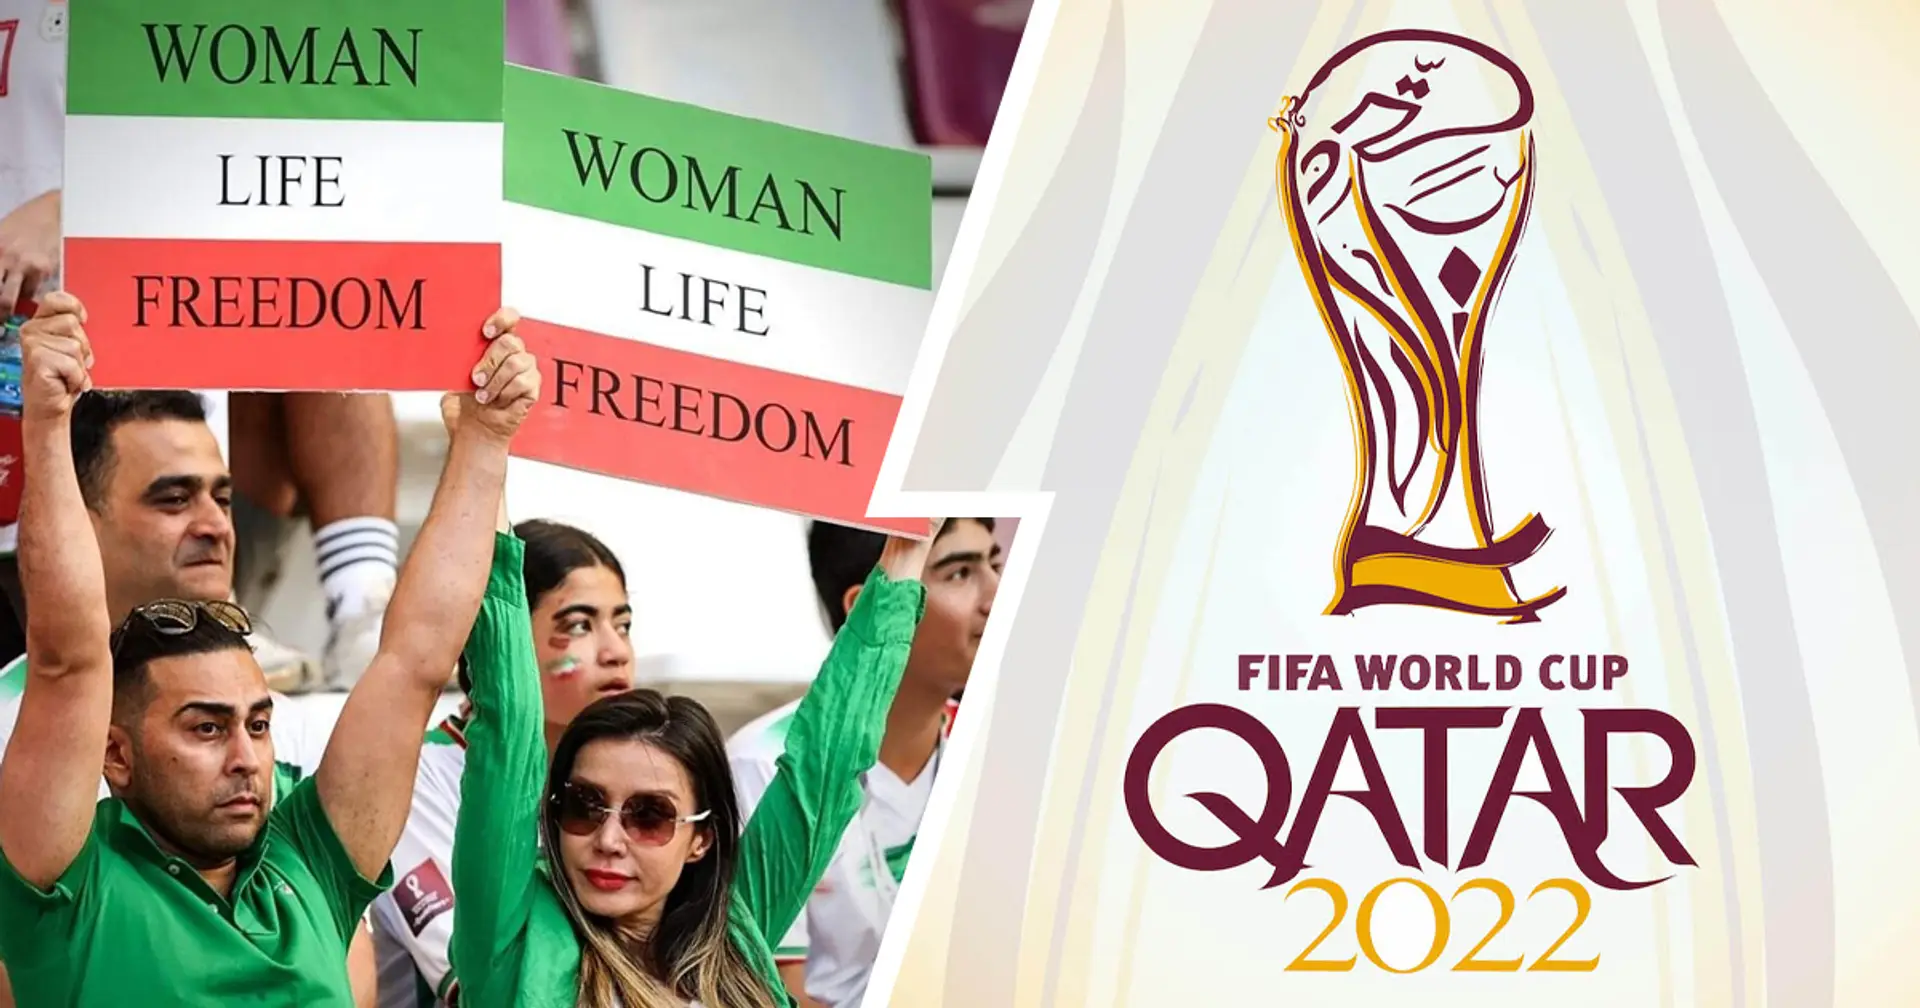 "Mai più come in Qatar, voto manipolato!": un dirigente UEFA getta ombre sulla FIFA e sui Mondiali 2022